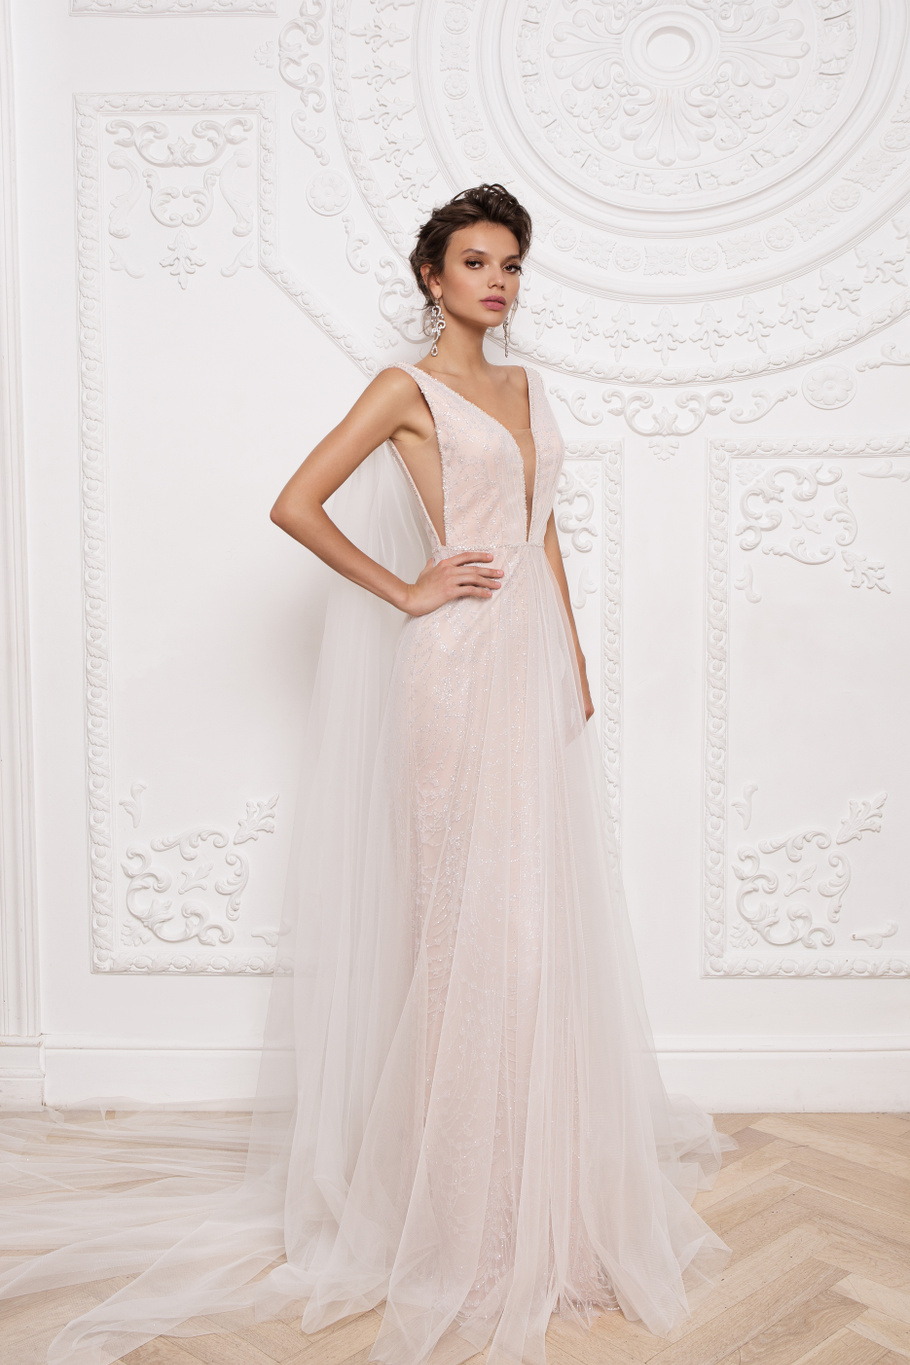 Купить свадебное платье «Прадин» Мэрри Марк из коллекции 2020 года в Краснодаре